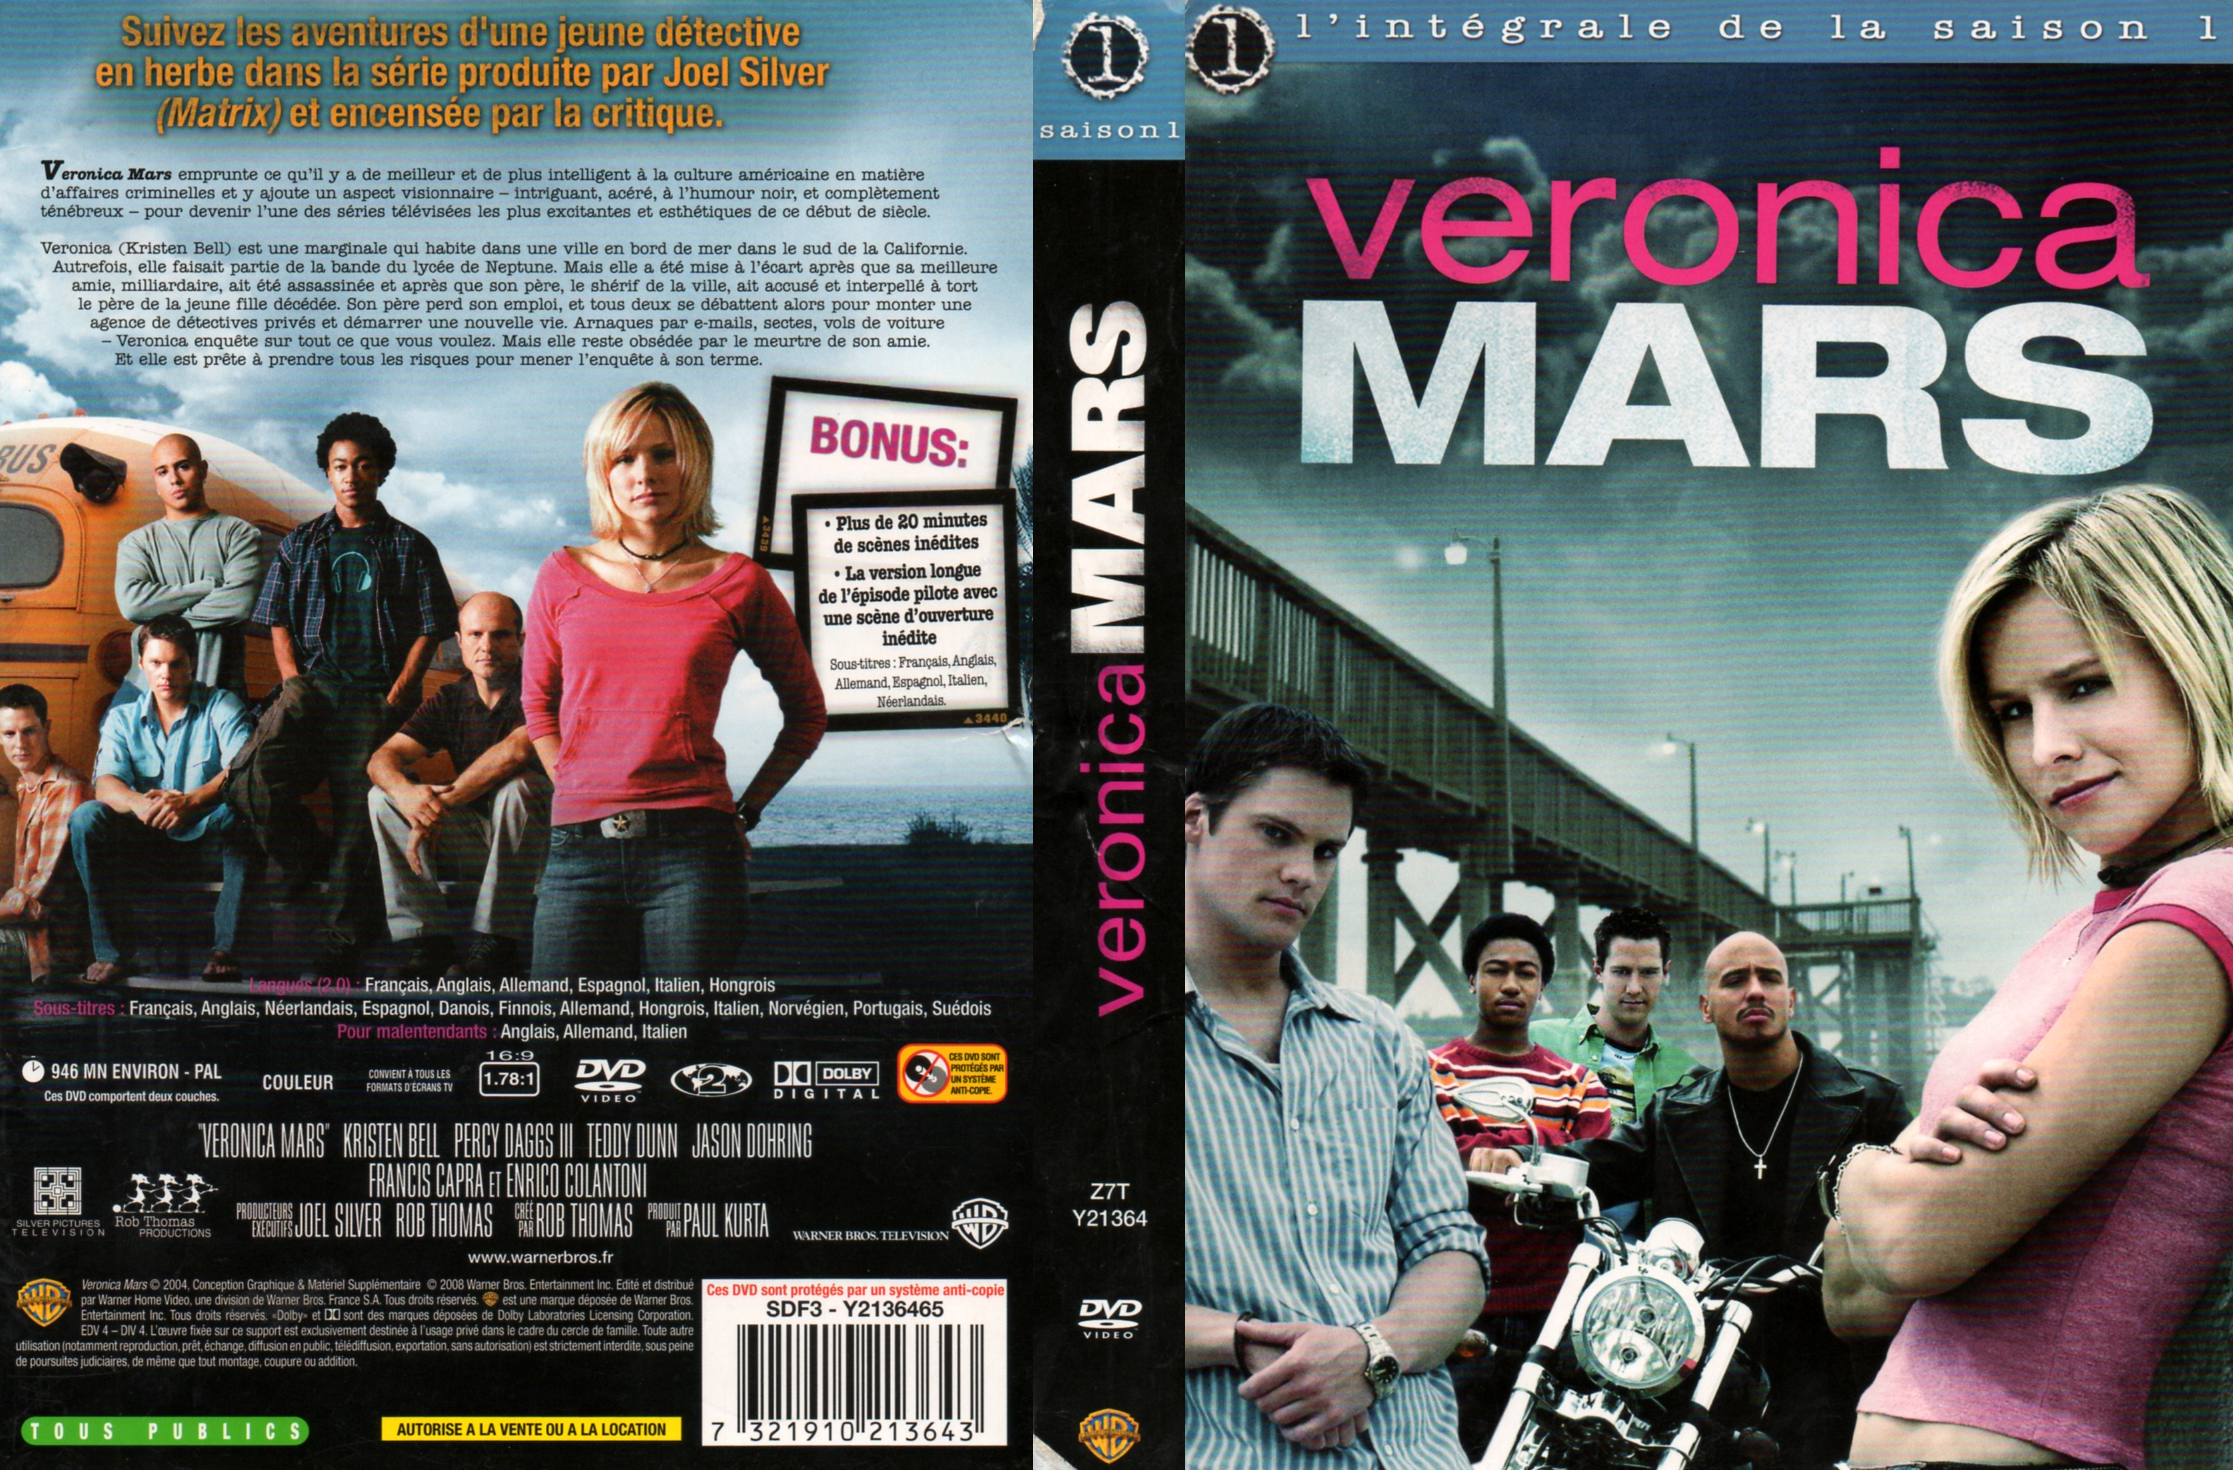 Jaquette DVD Veronica Mars Saison 1